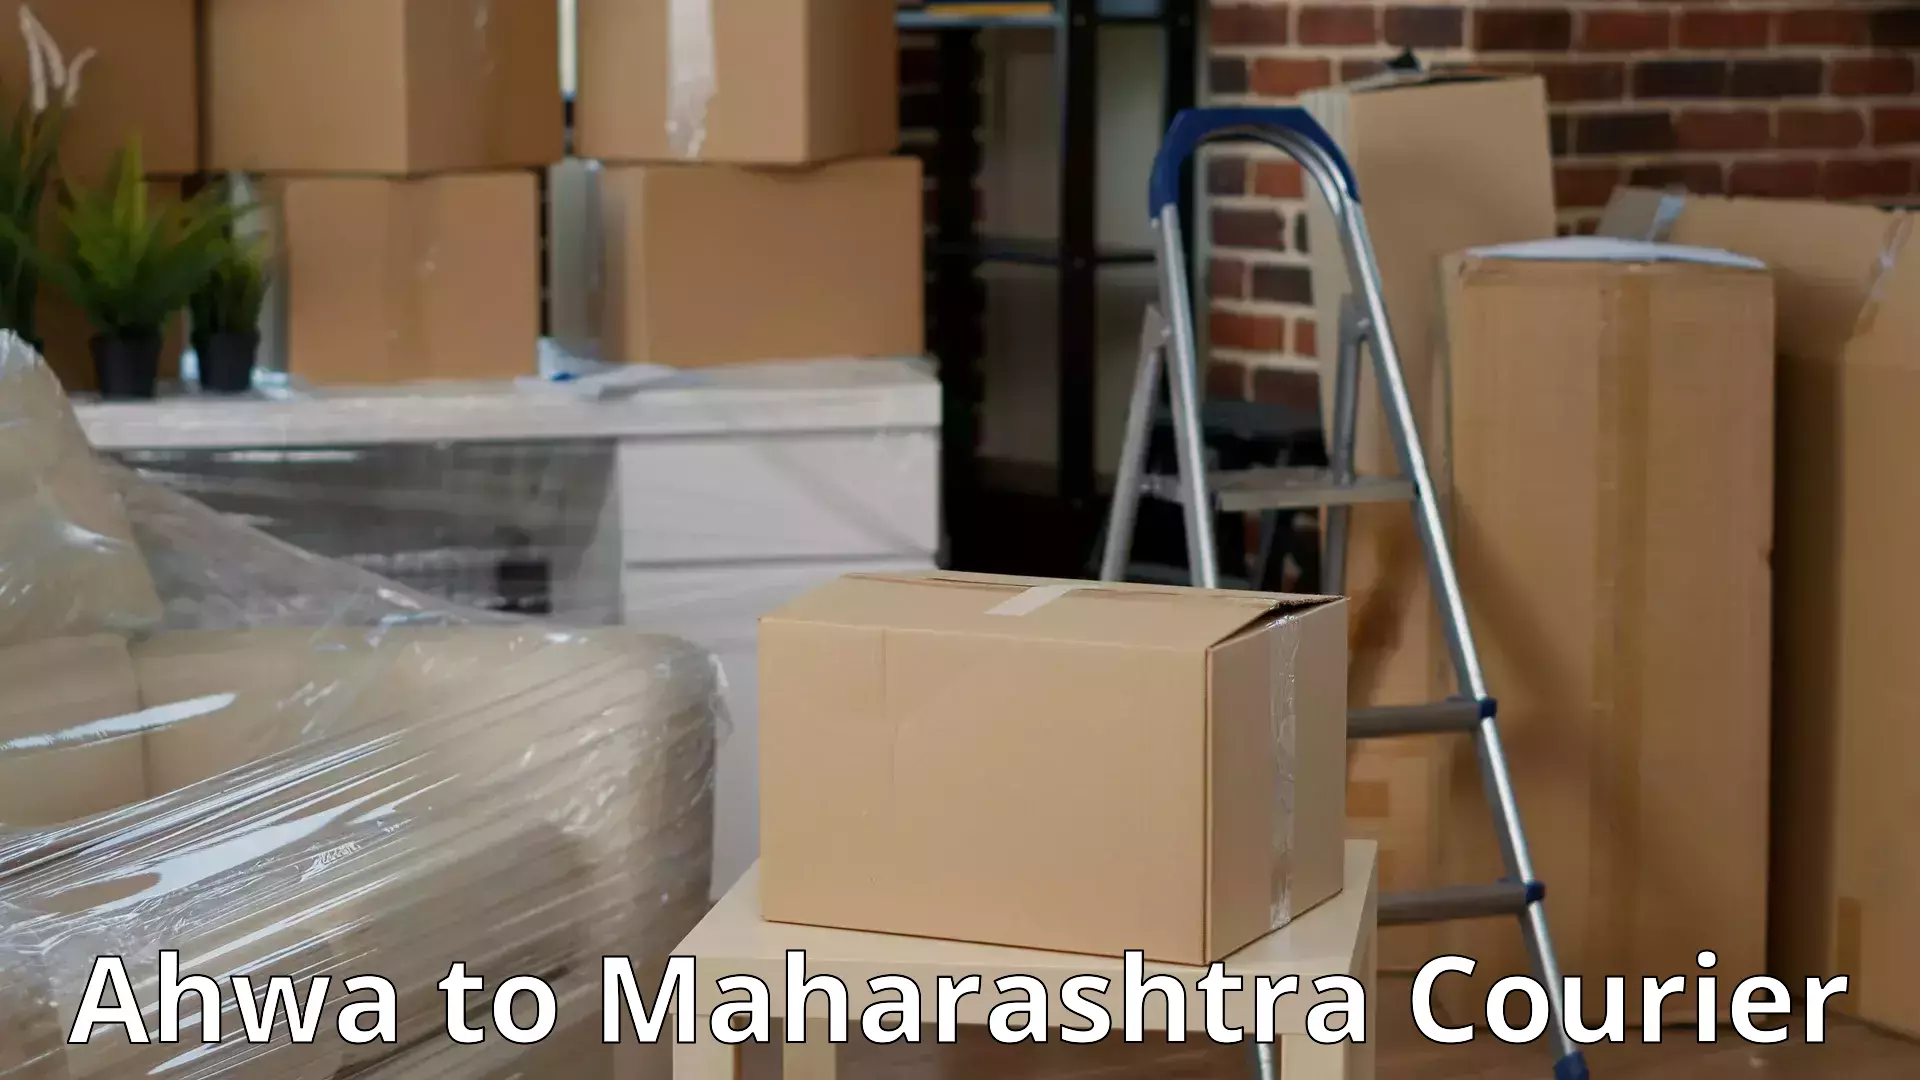 Expert moving and storage Ahwa to Mumbai Port